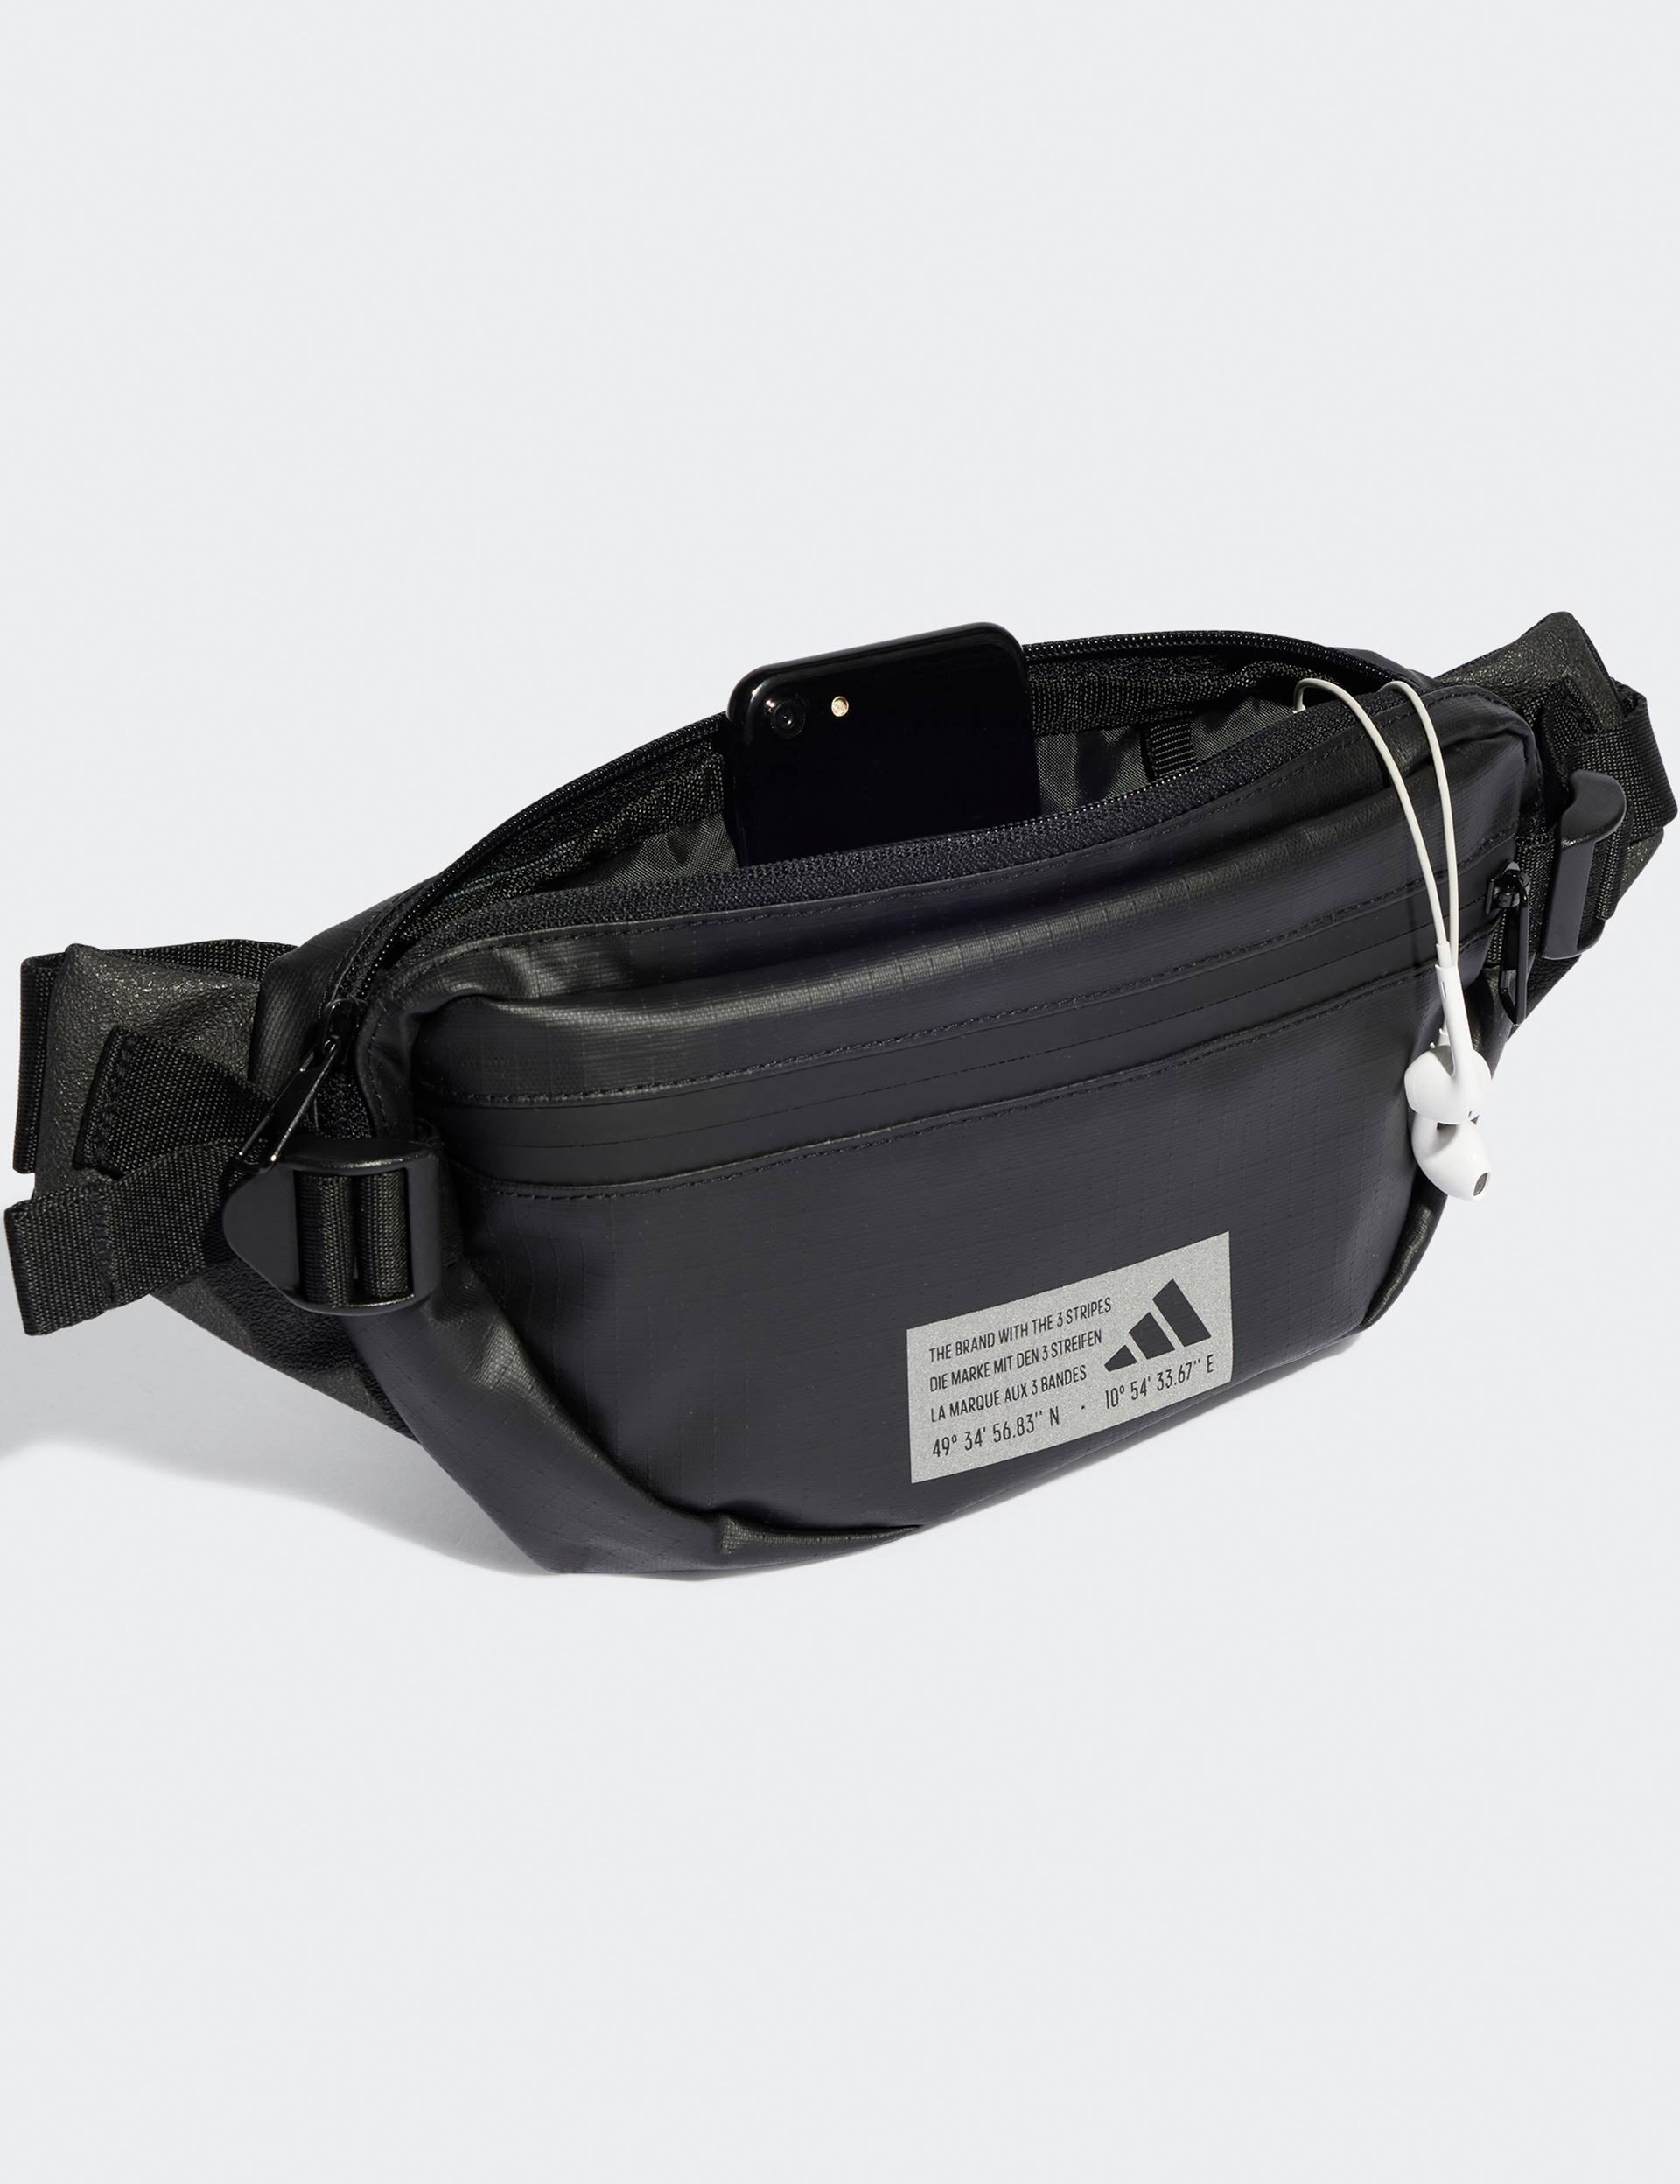 Qoo10 - Cooler Bag adidas Originals Adventure Camp Cooler Box Insulated Bag  17... : Bag/Wallets